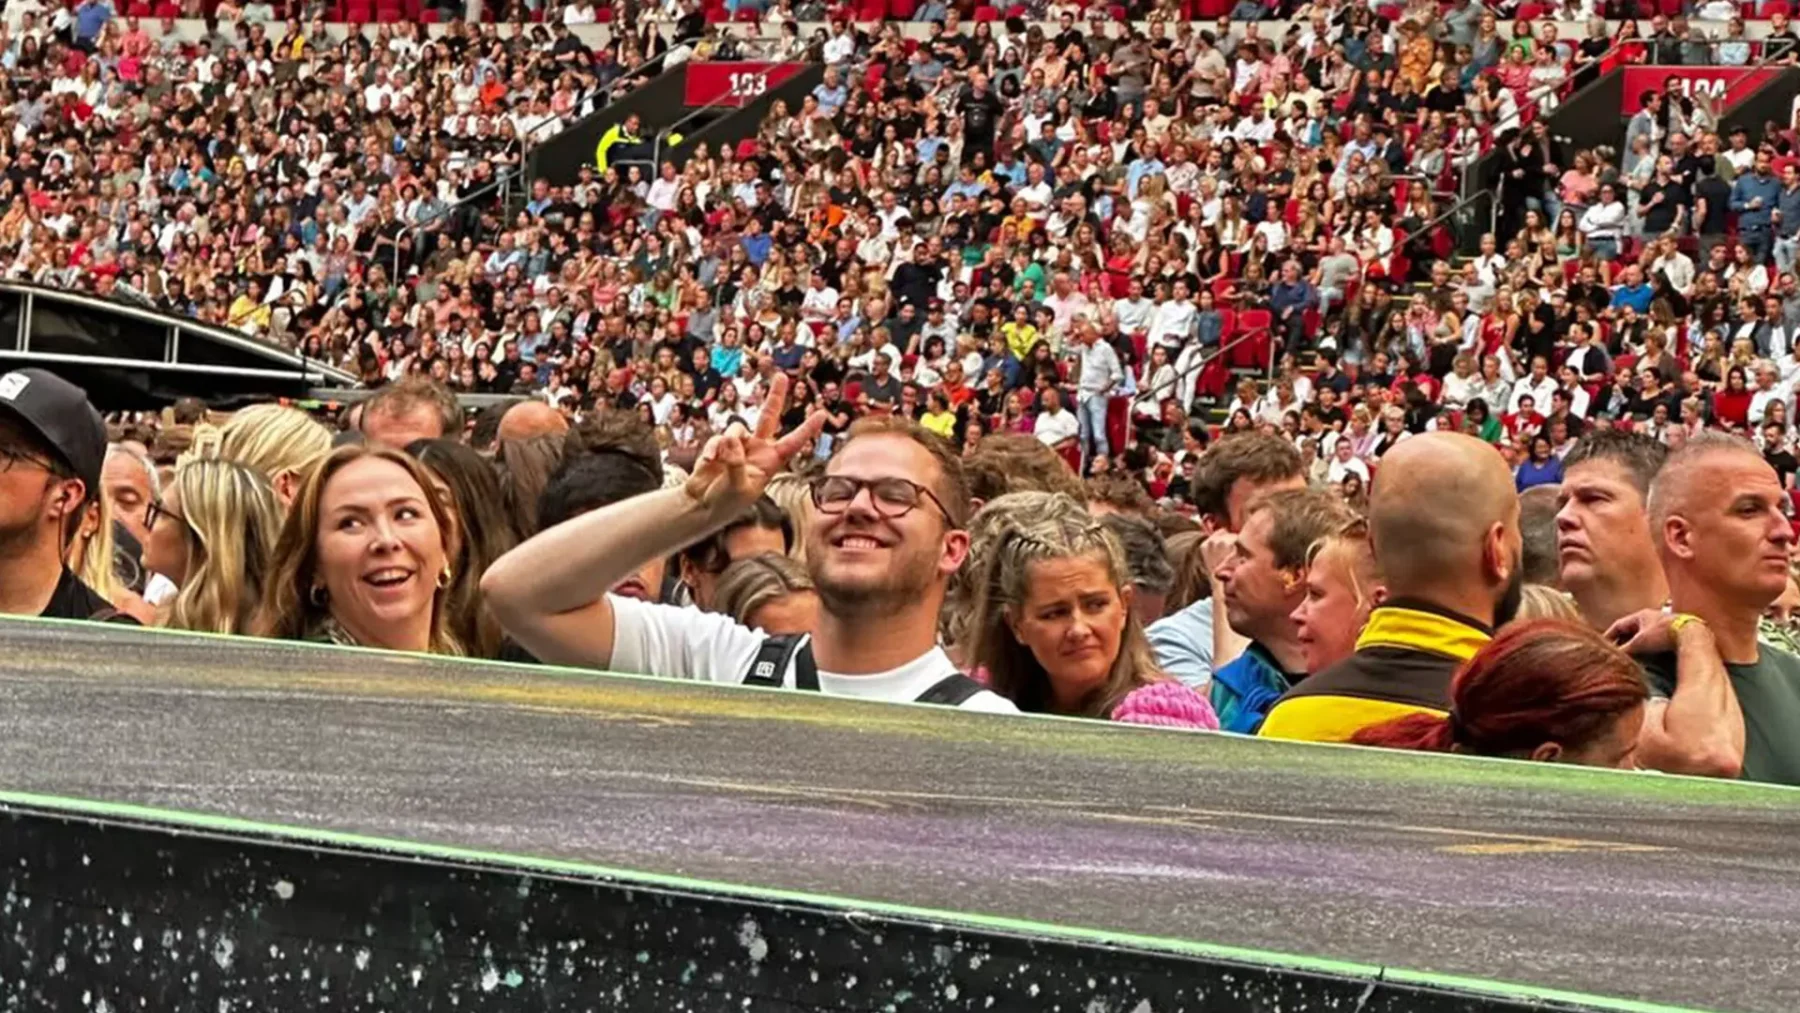 Coldplay-manager nodigt fan Tim (25) uit om band te fotograferen